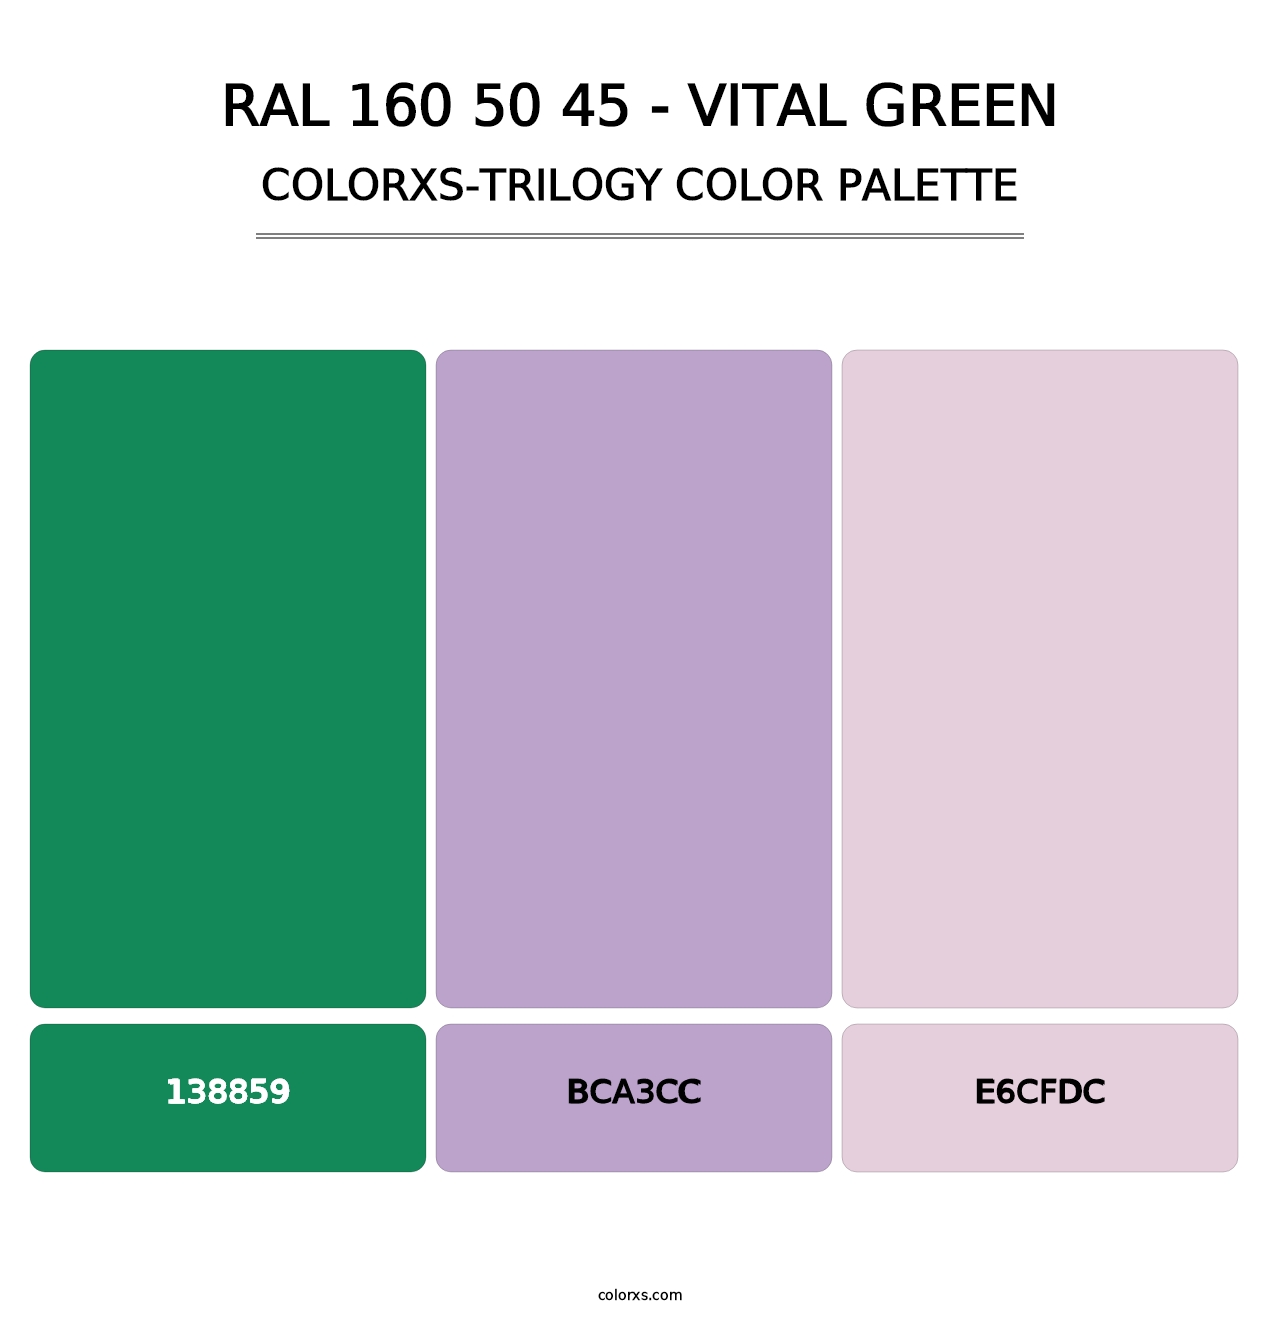 RAL 160 50 45 - Vital Green - Colorxs Trilogy Palette